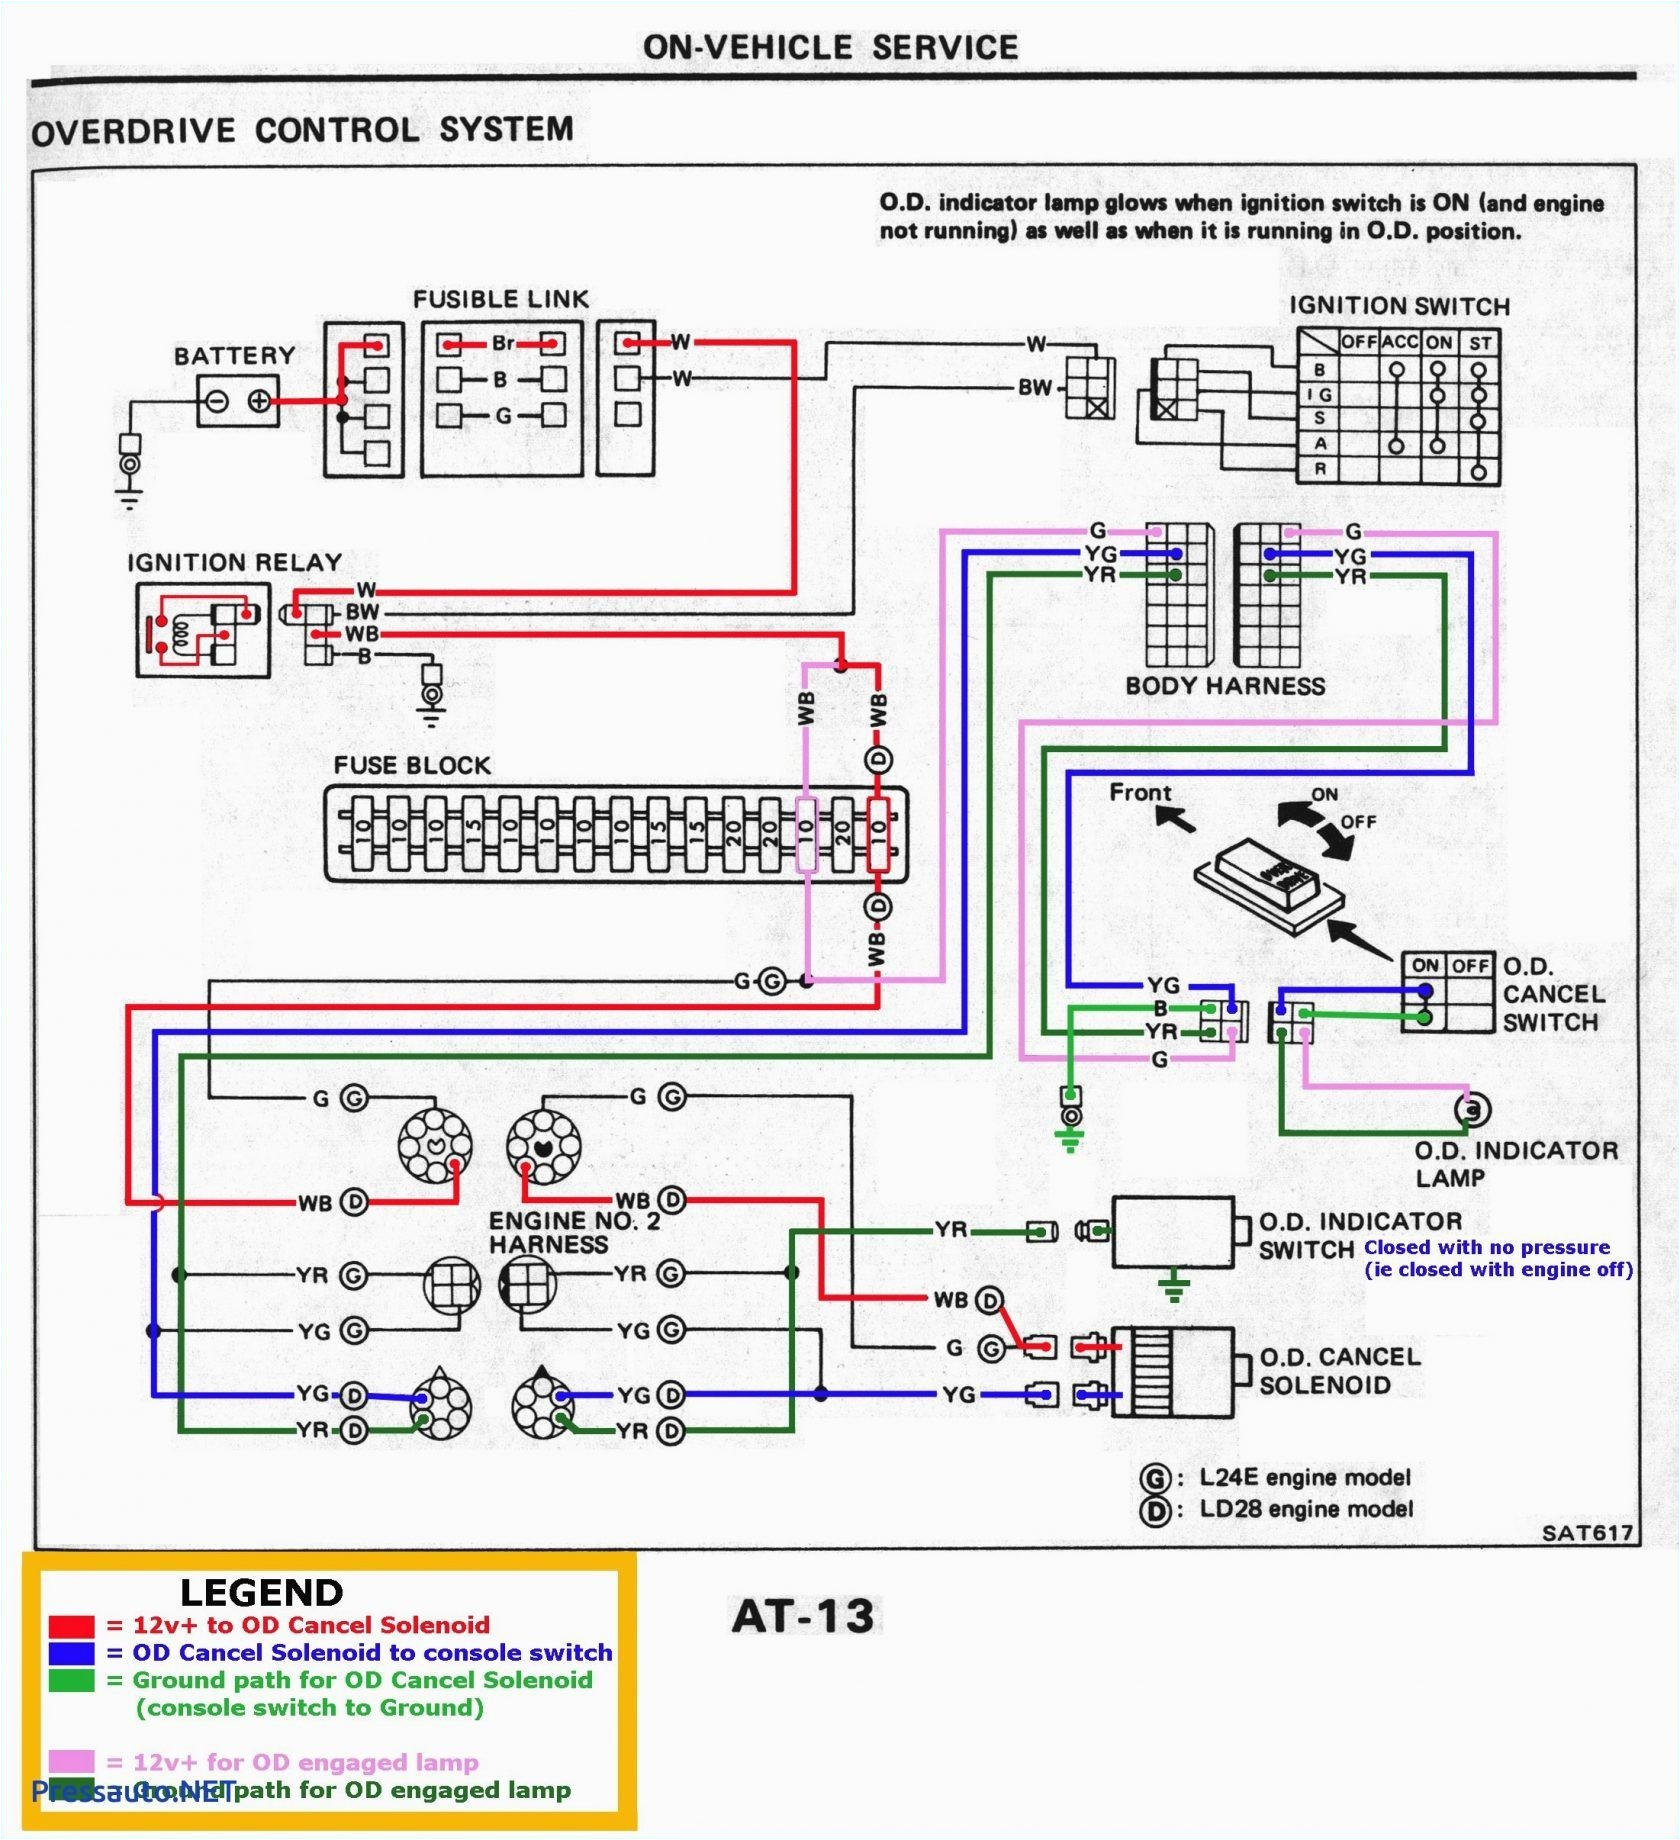 vermeer alternator wiring diagram wiring diagram vermeer alternator wiring diagram